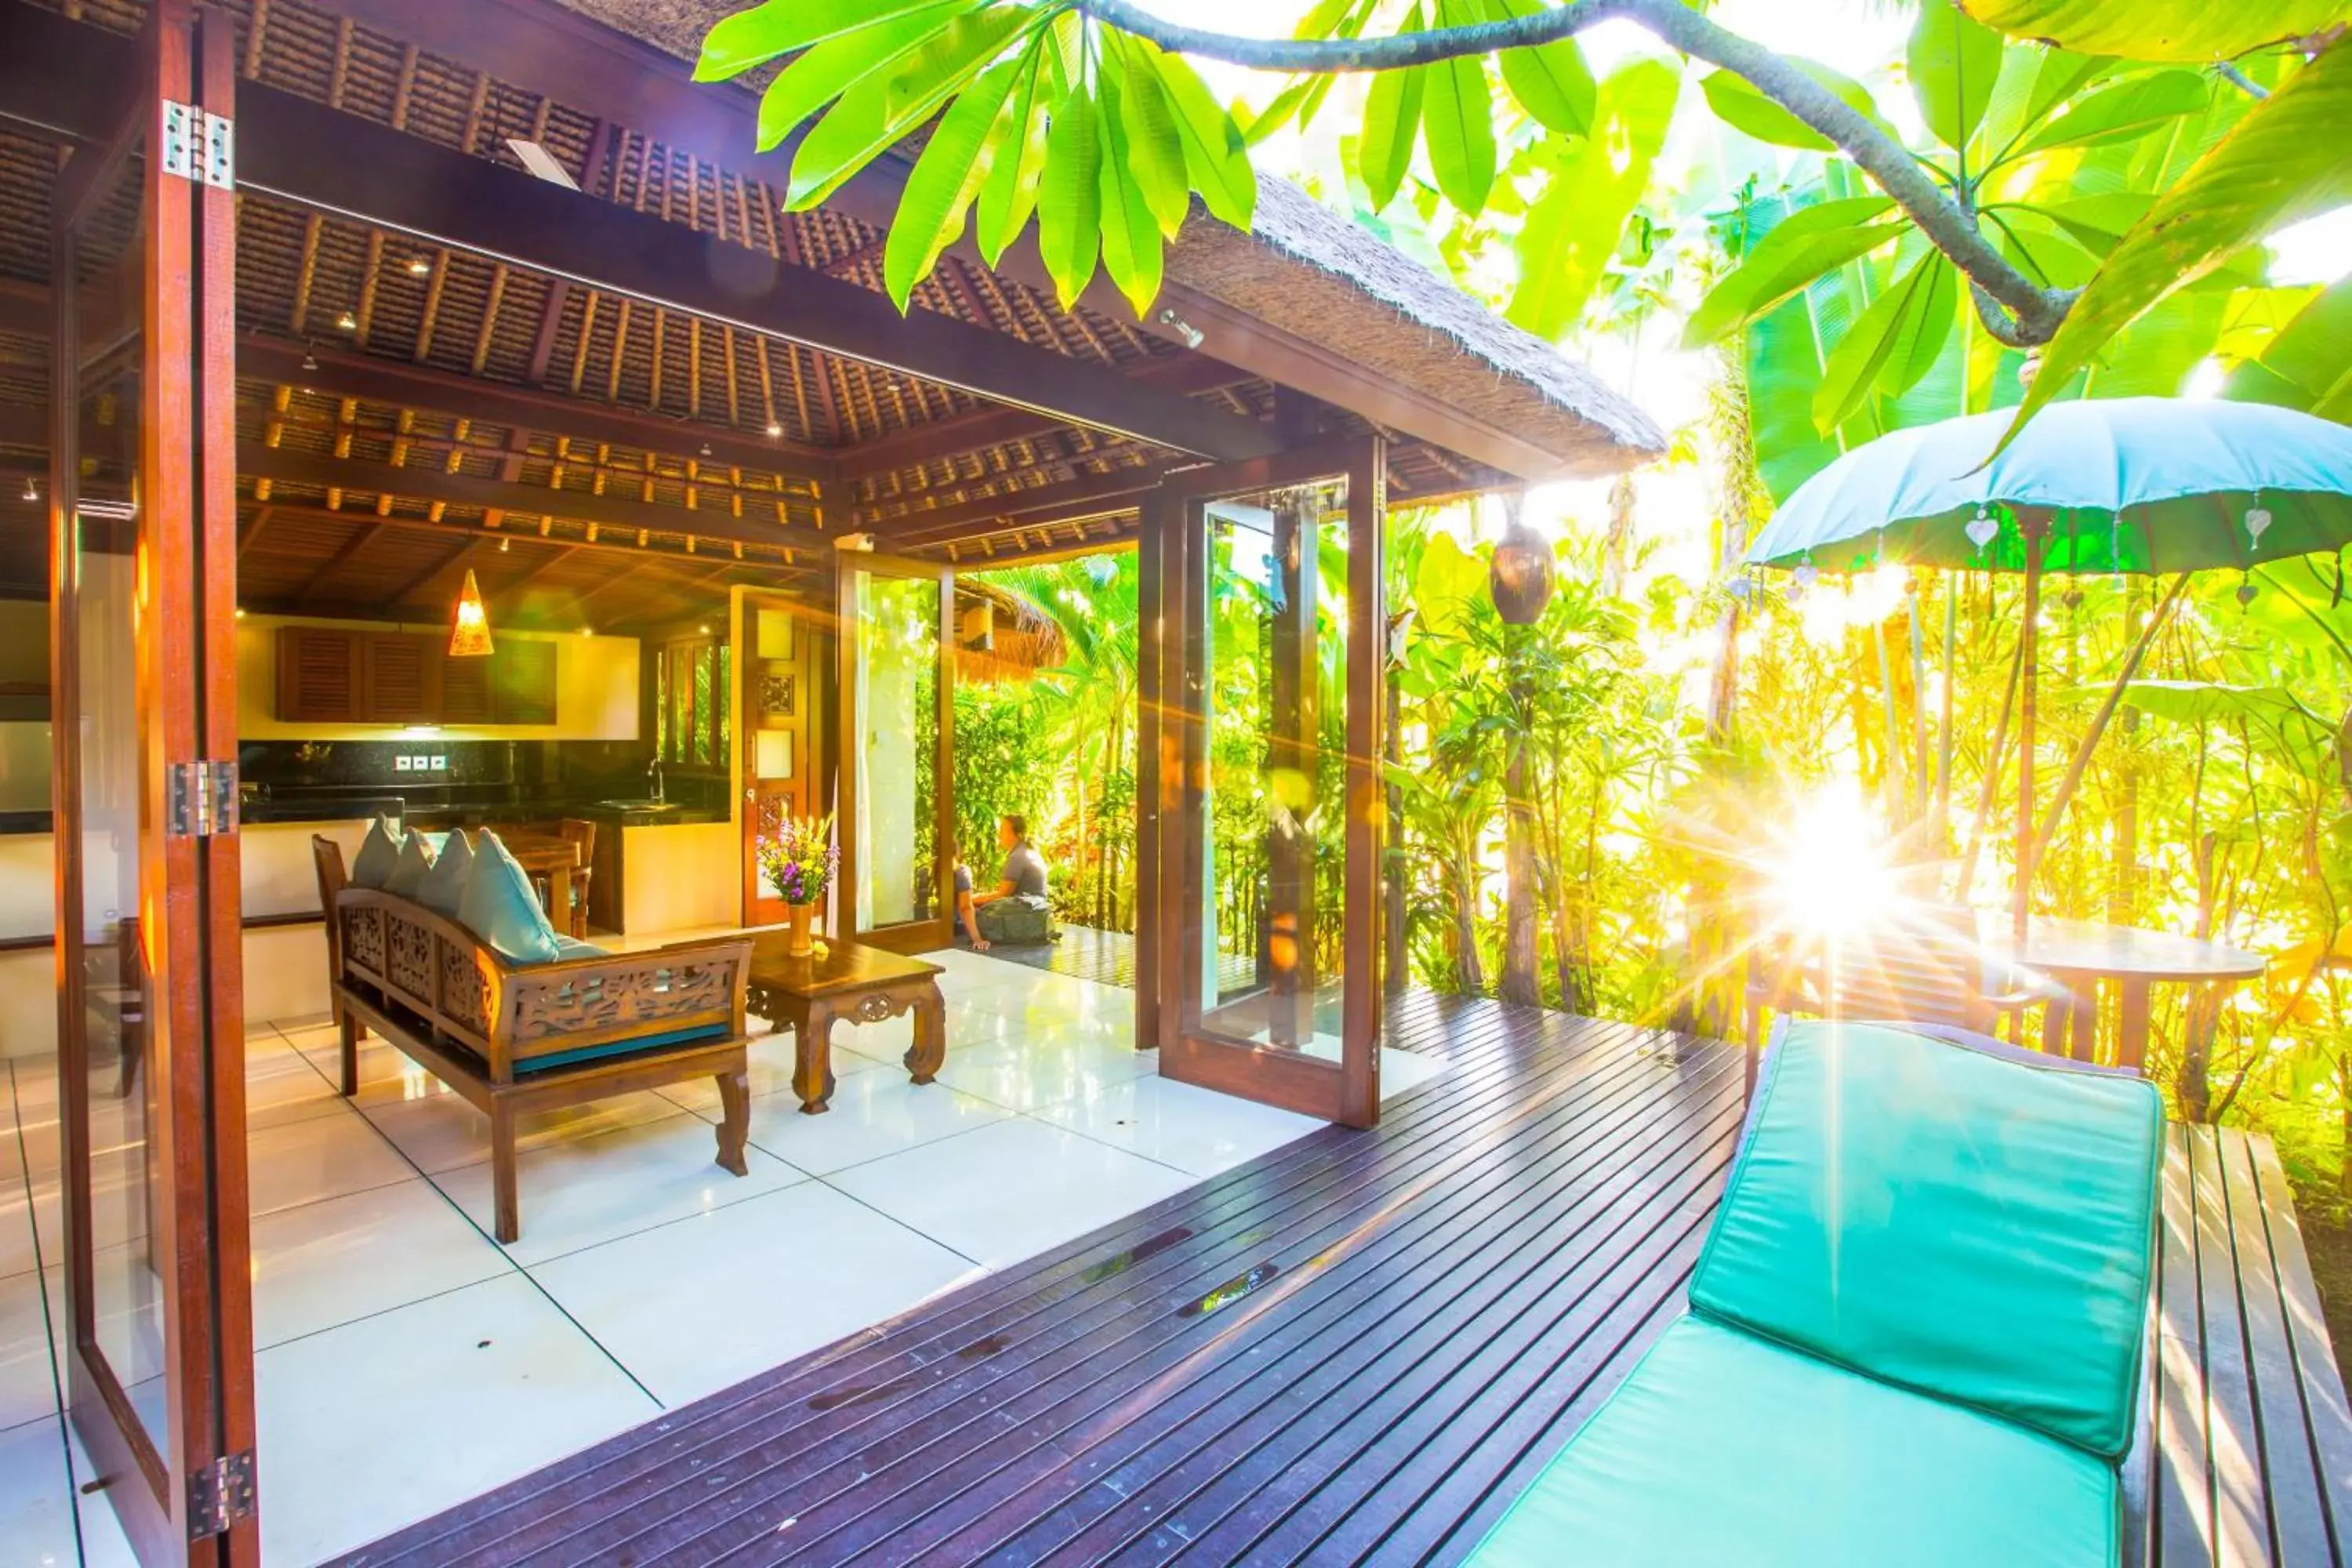 One-Bedroom Villa with Garden View in Bali Harmony Villa